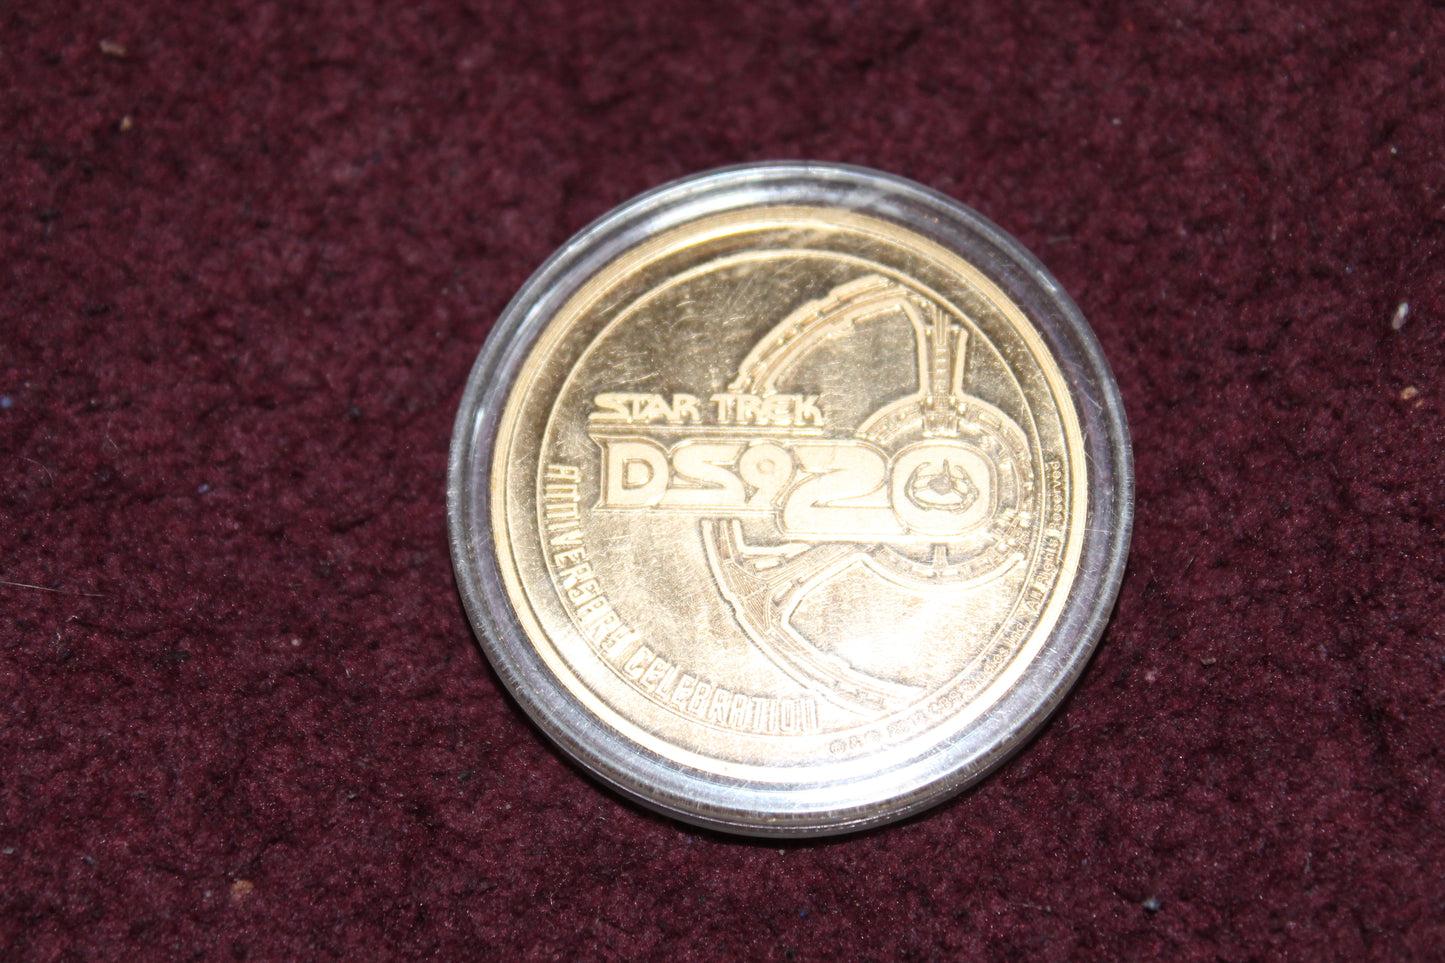 LasVegas Hilton Collectible Coins Featuring Deep Space 9